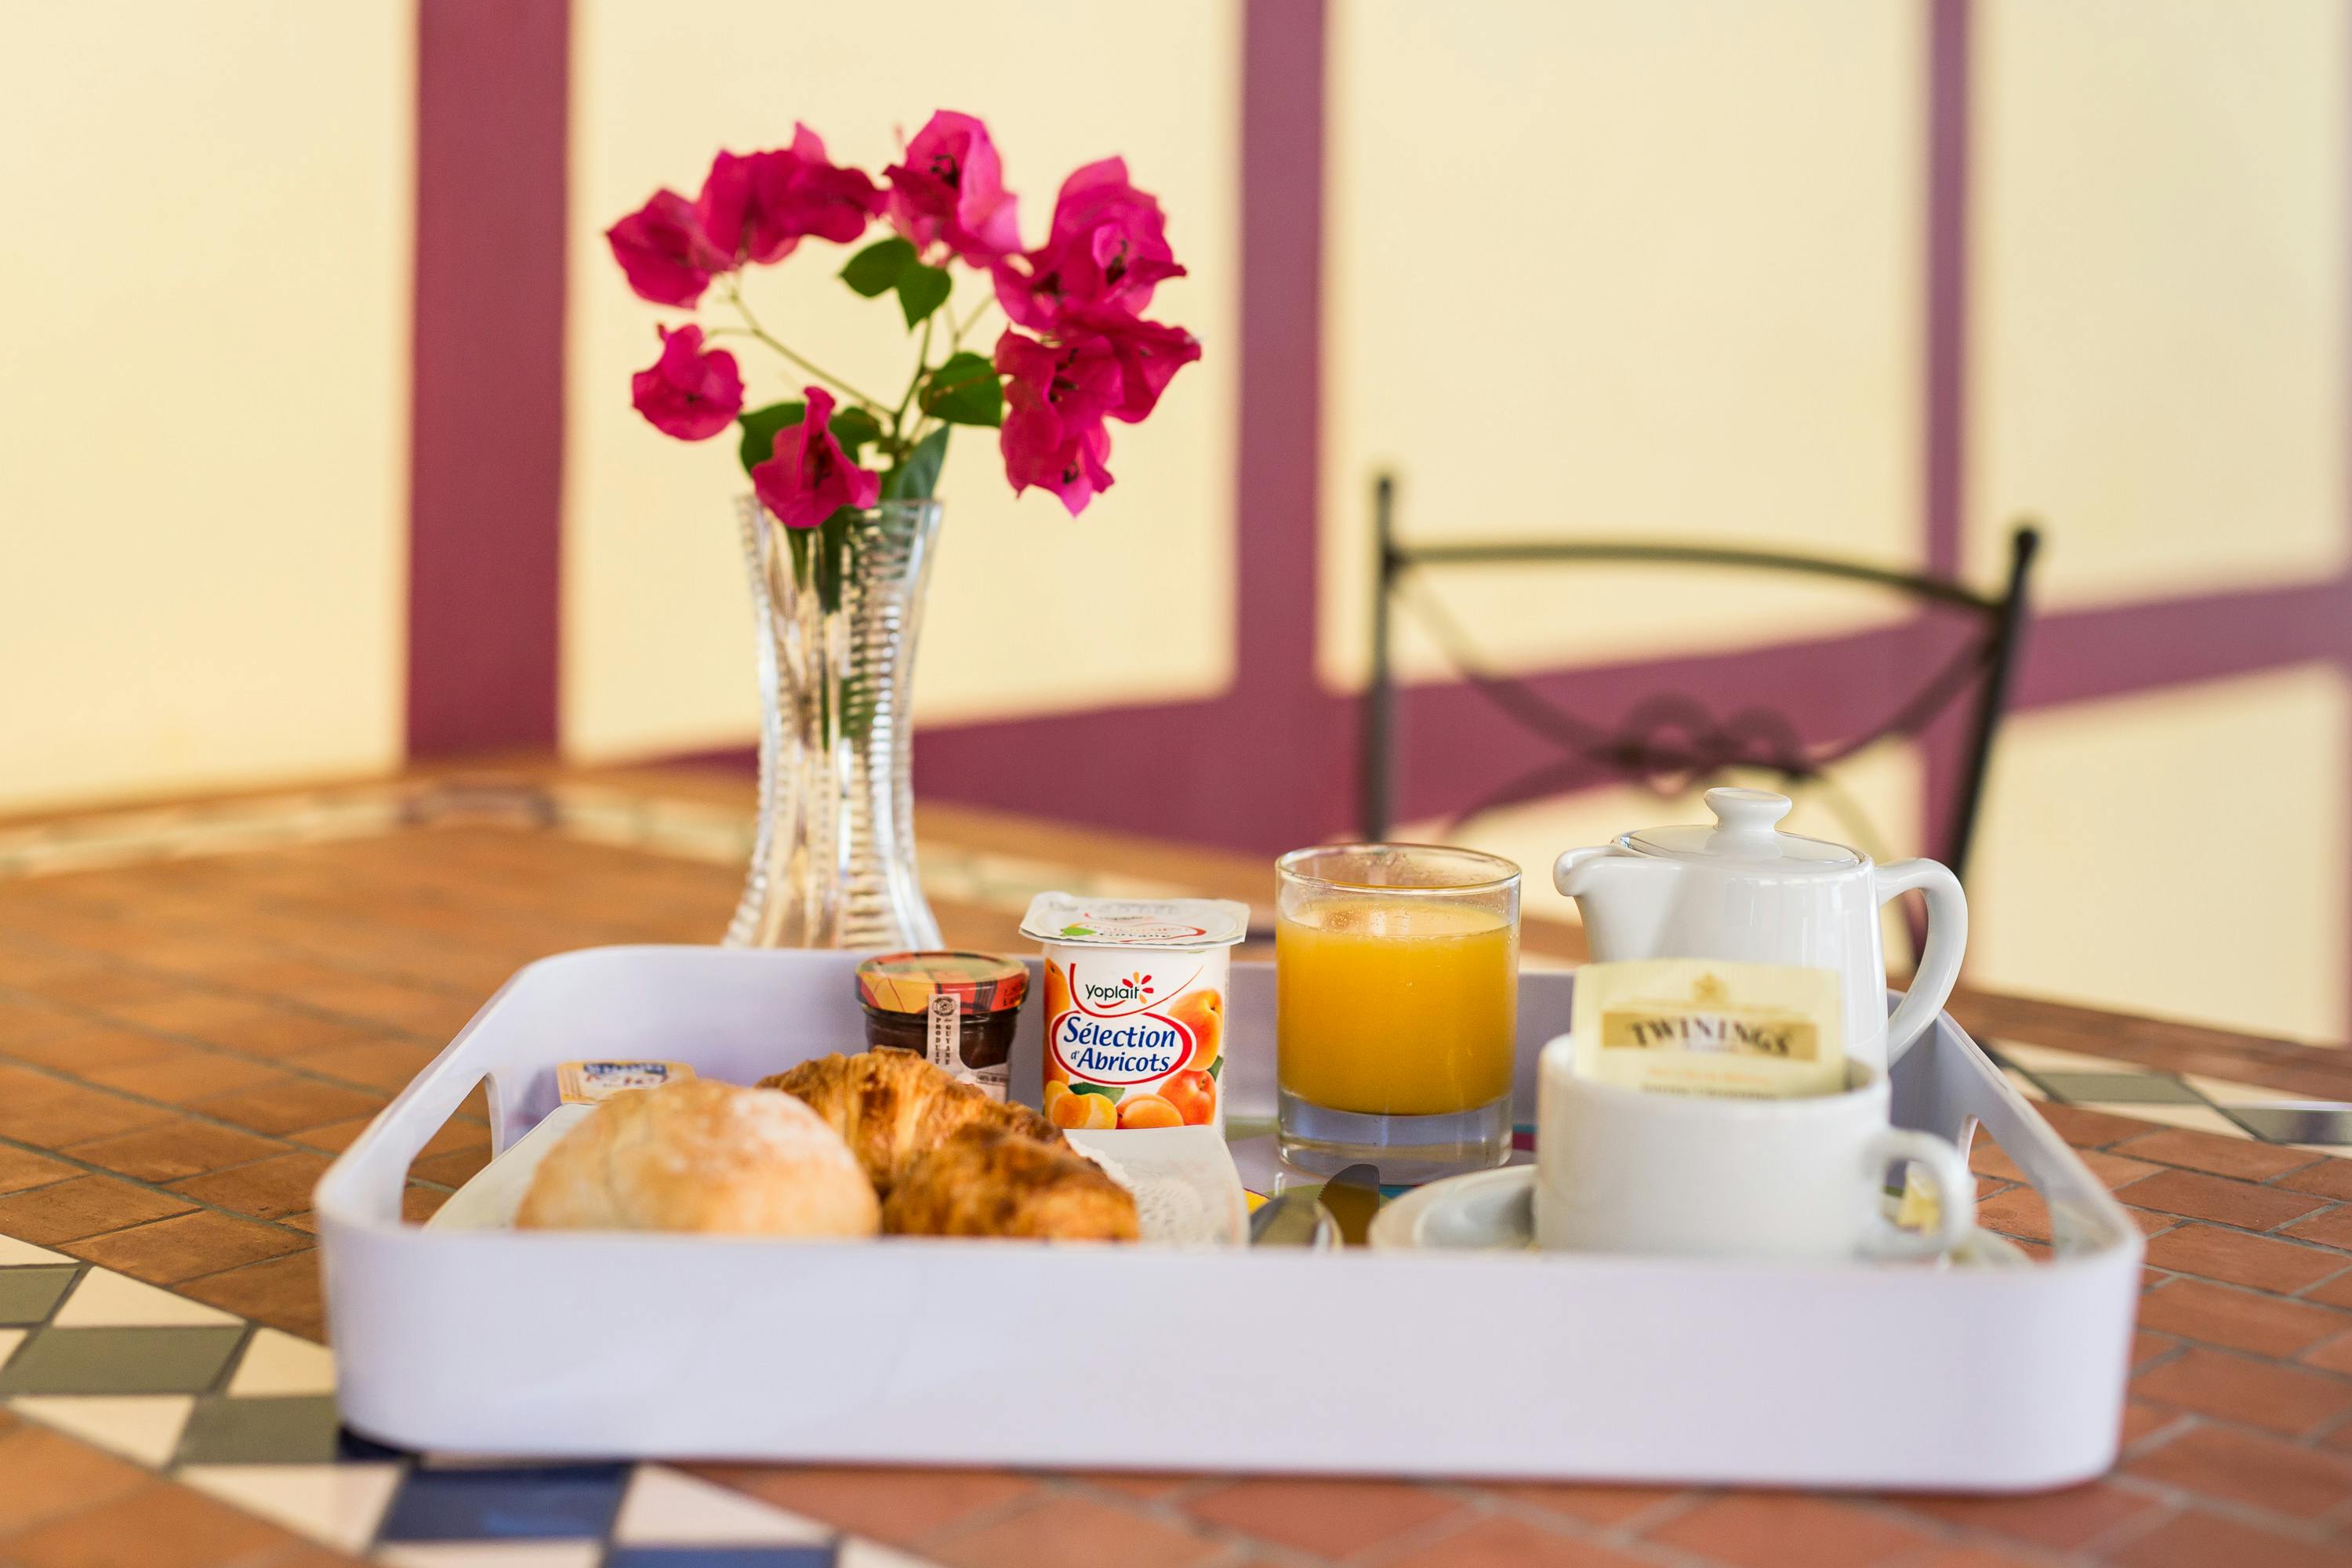 In-room breakfast at La Belle Etoile, petit-déjeuner servi en chambre à l'appart'hôtel La Belle Etoile